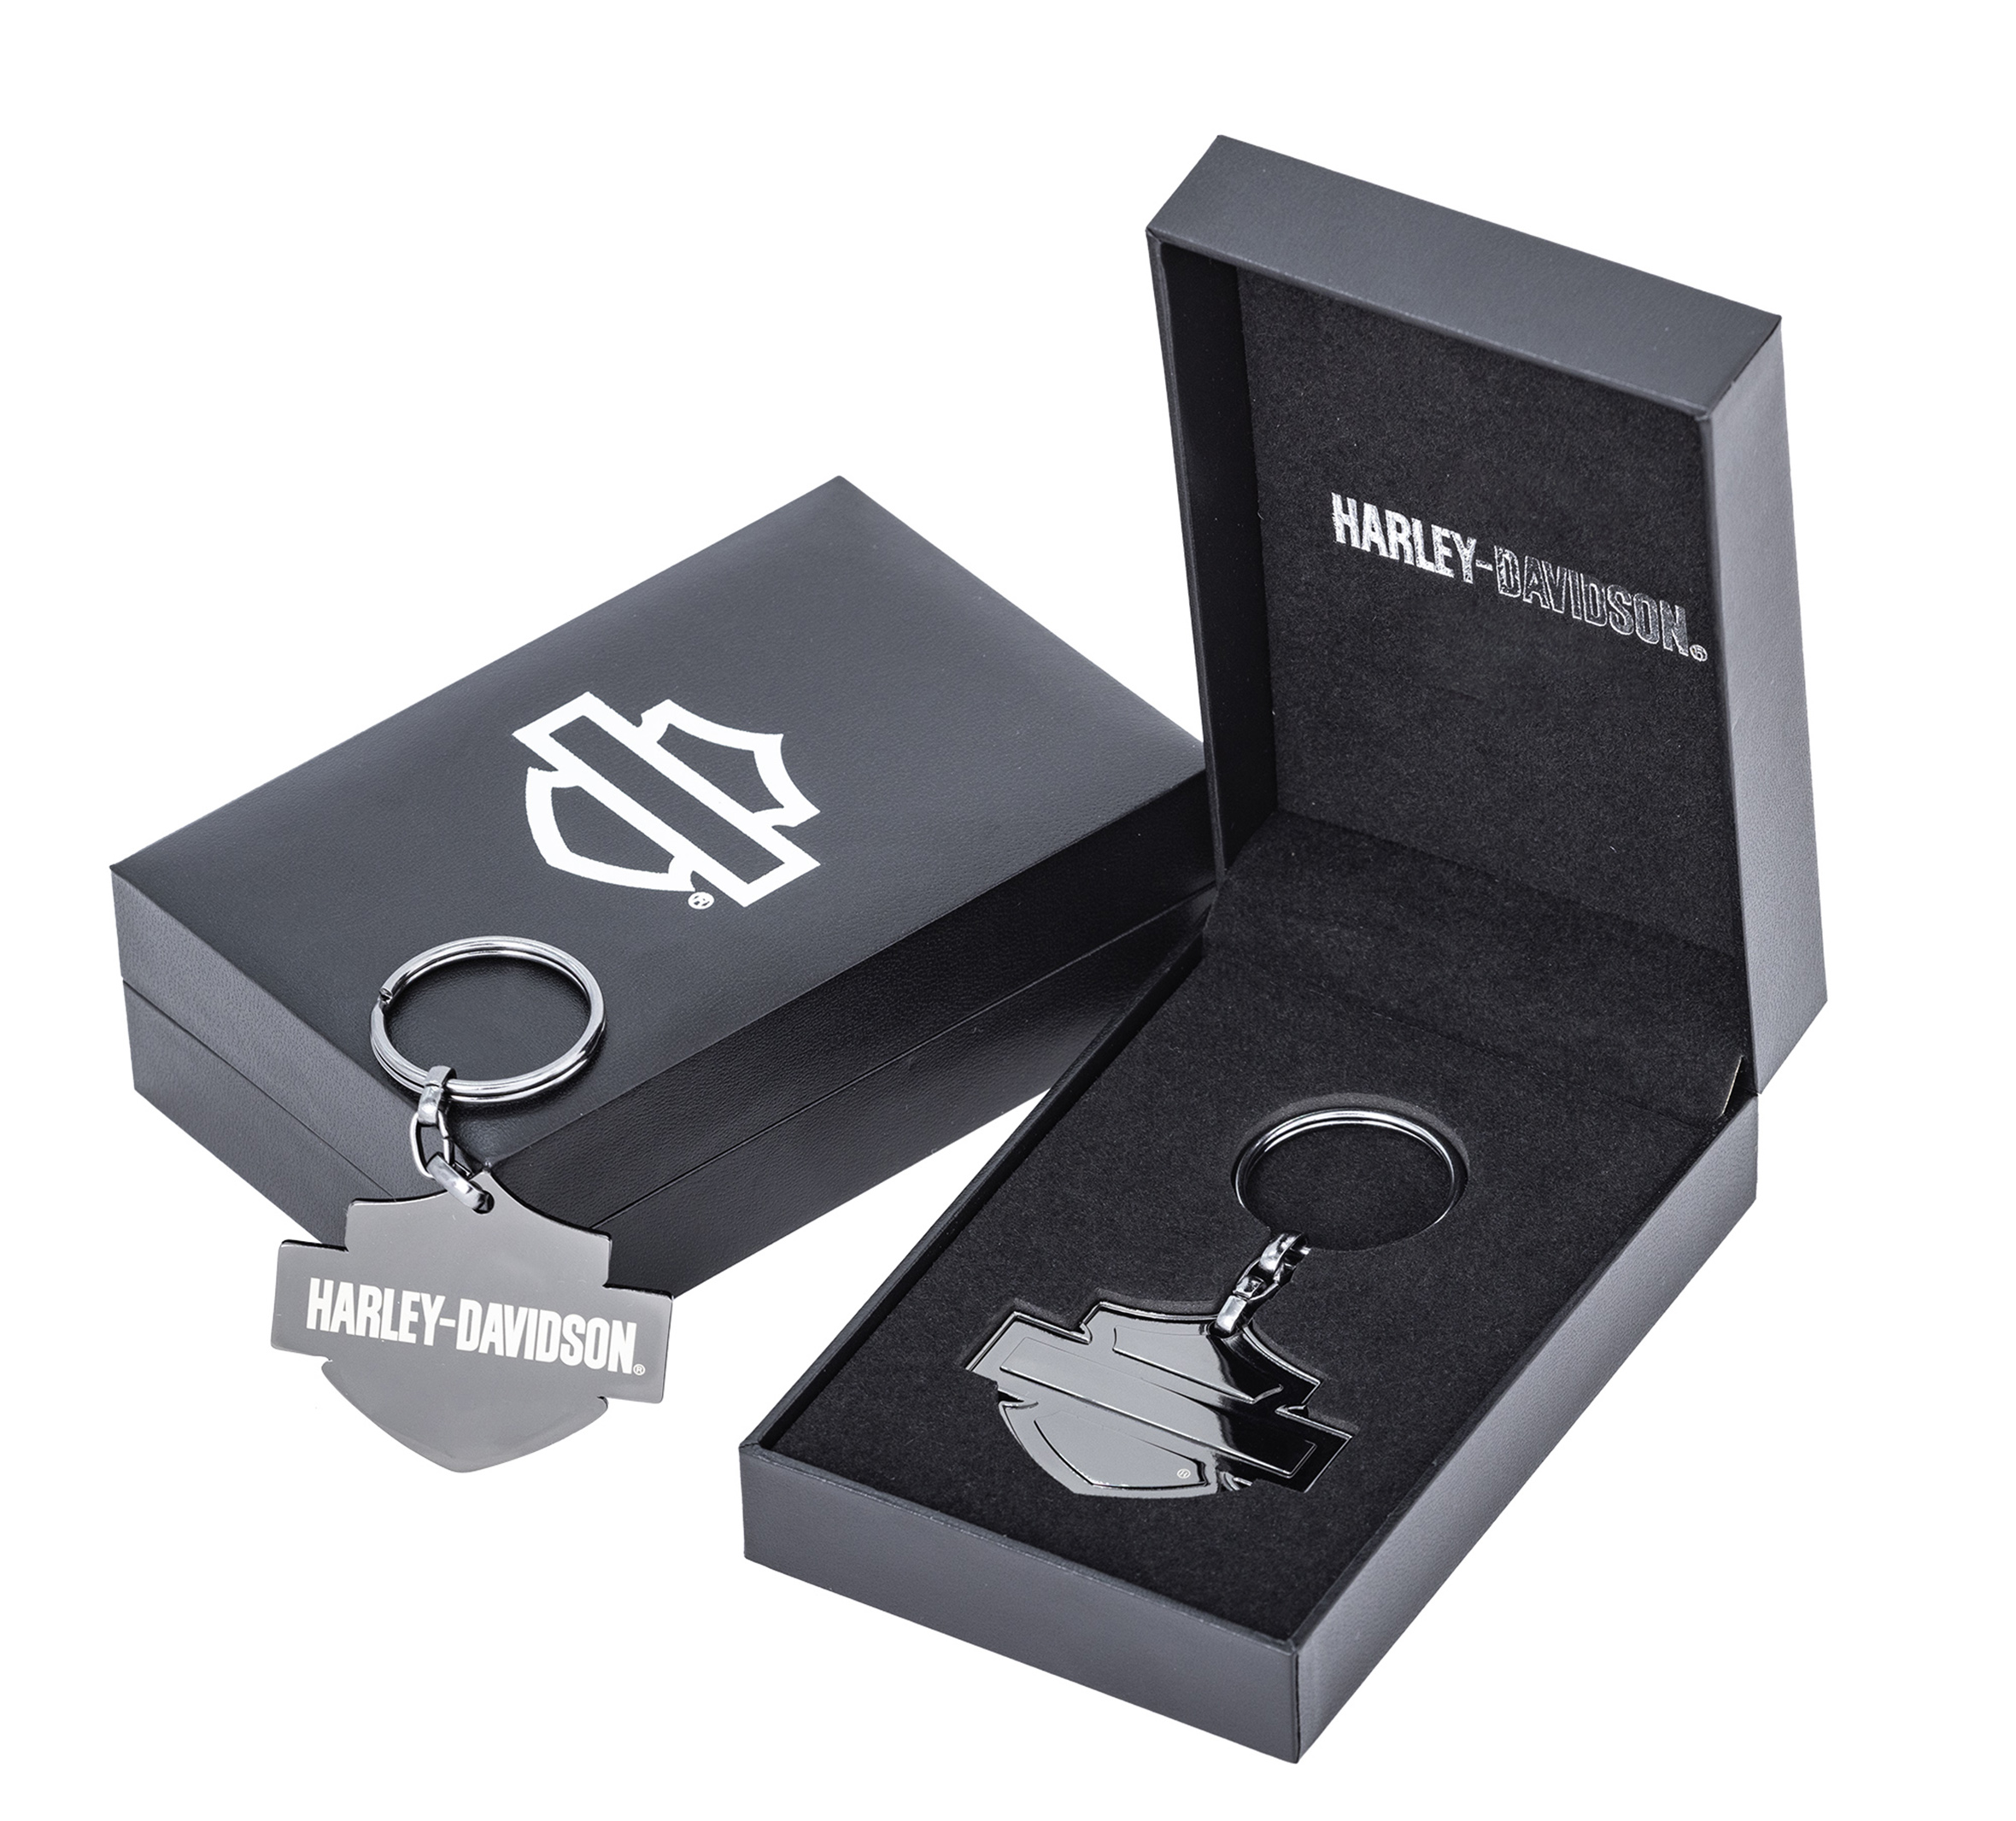 Open Bar u0026 Shield Key Chain in Gift Box | Harley-Davidson USA